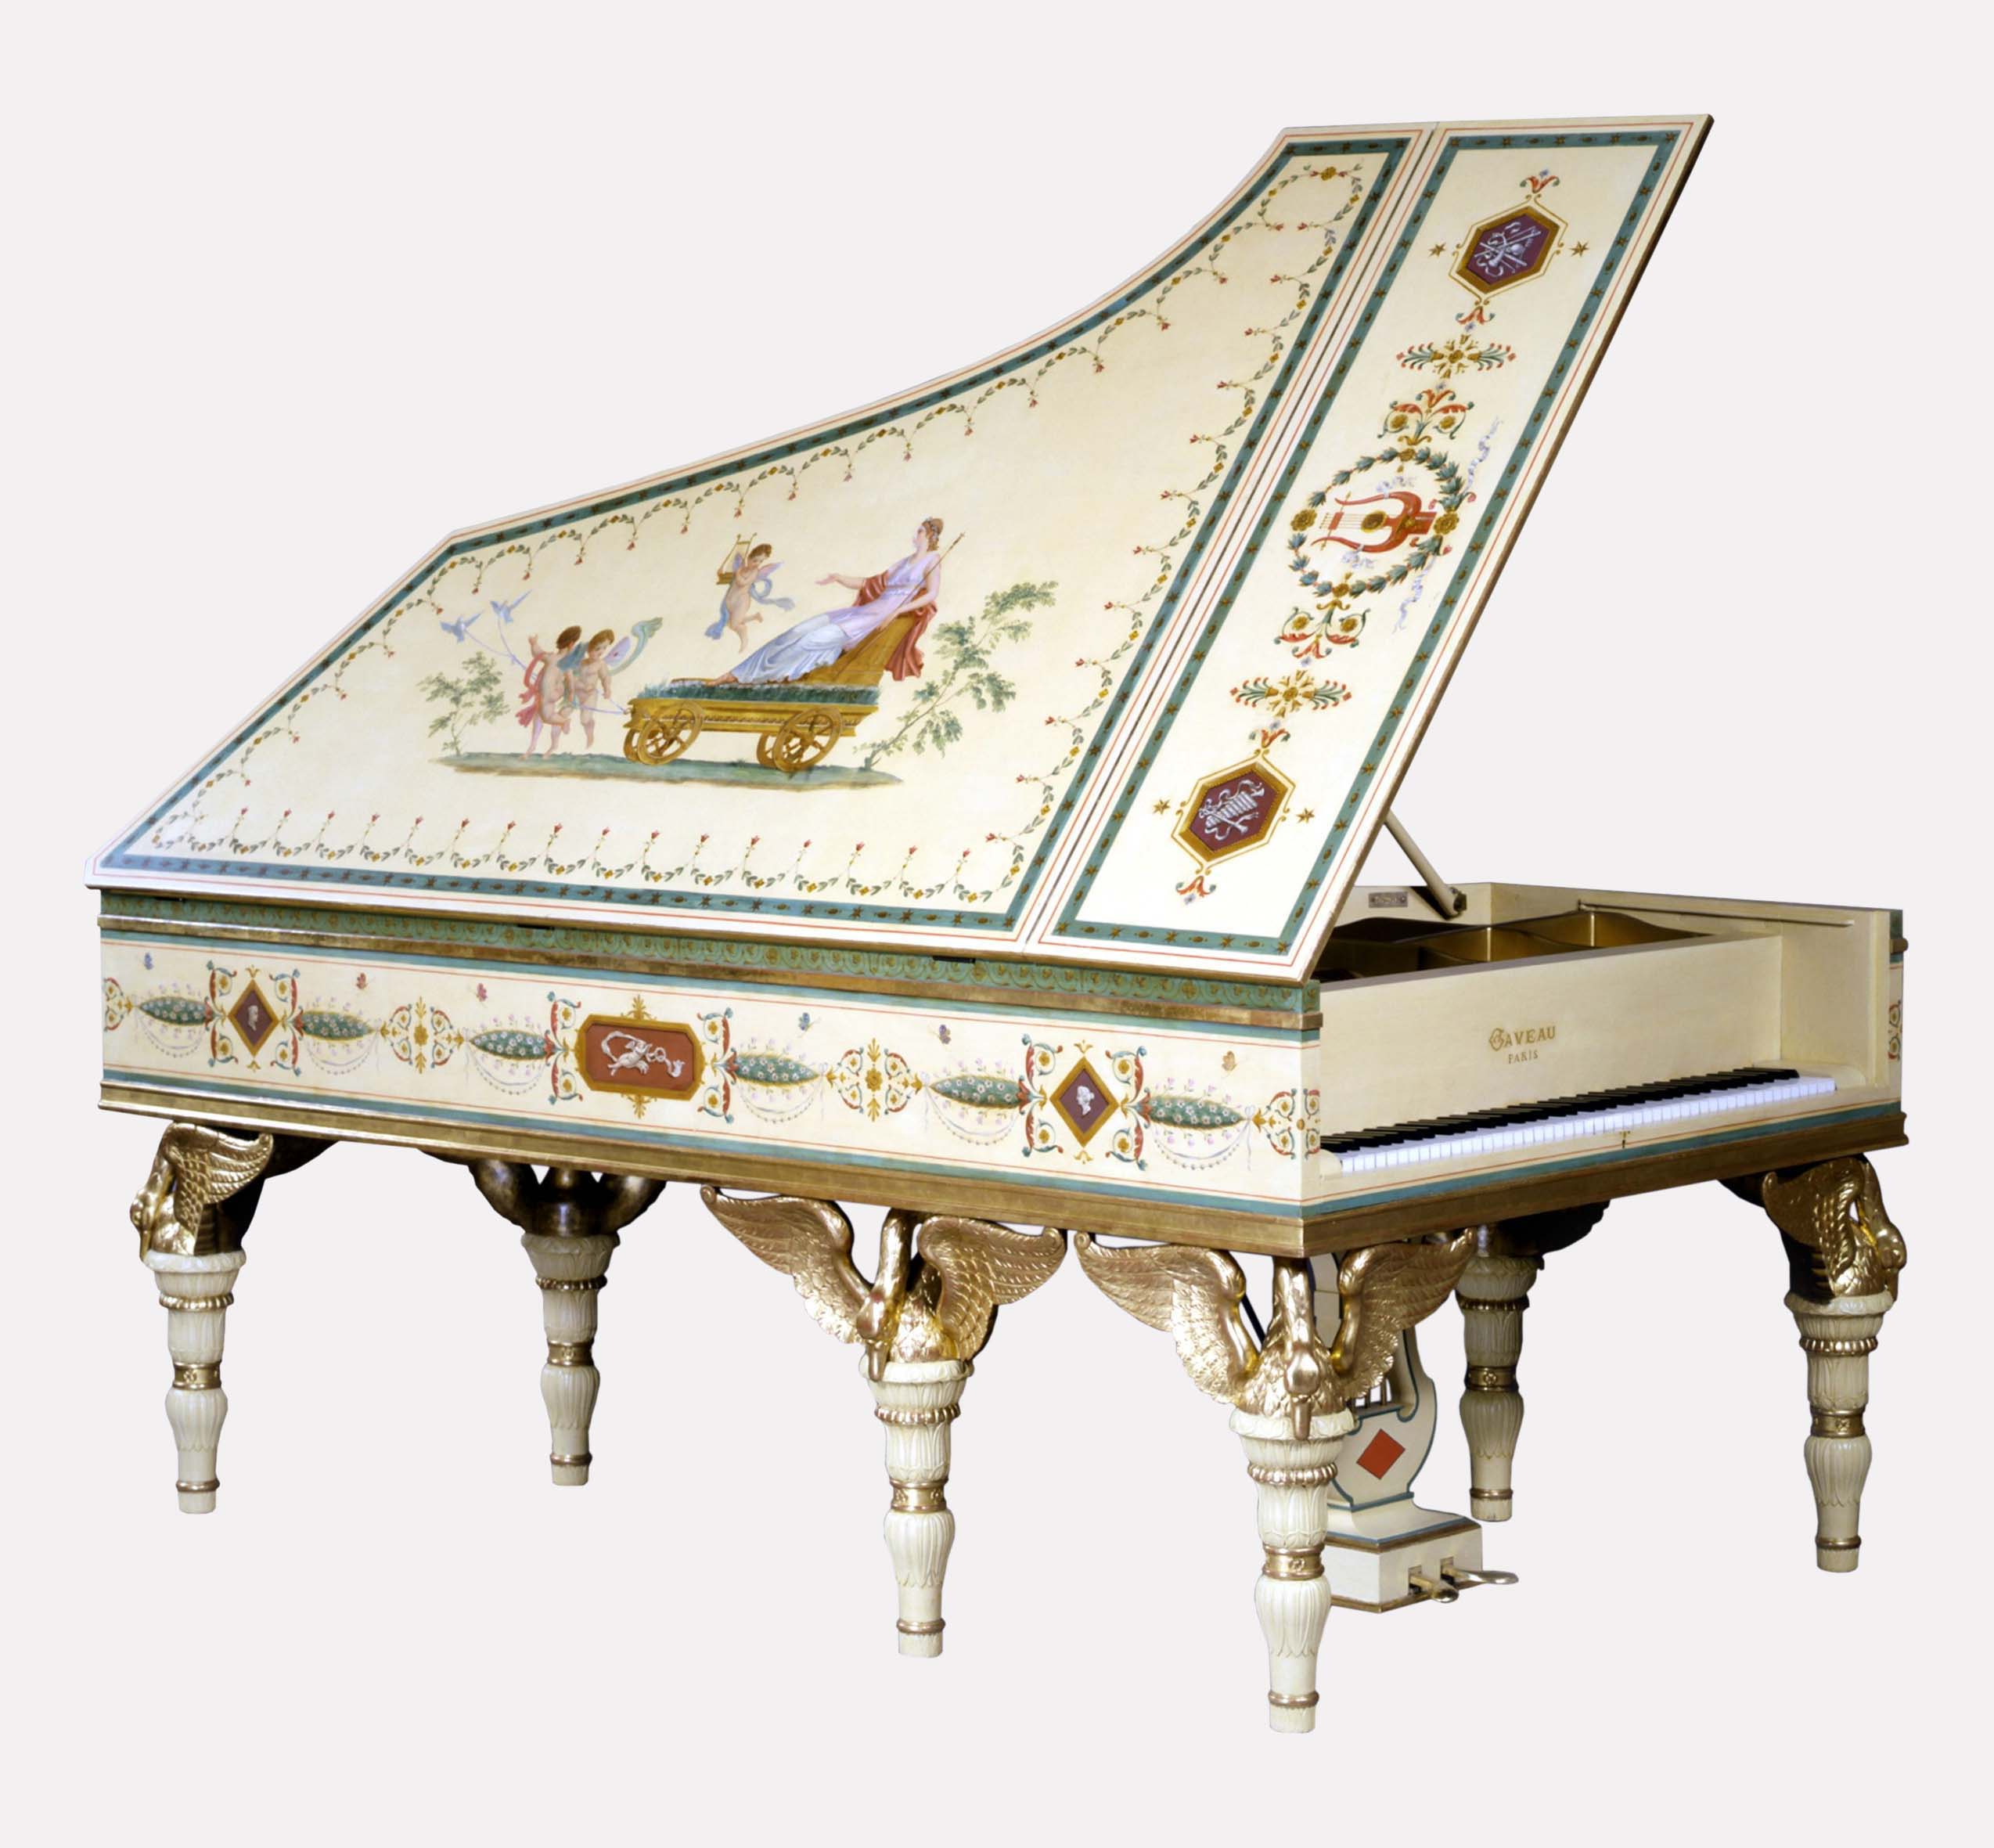 Лебединое фортепиано знаменитой мануфактуры Gaveau à Paris